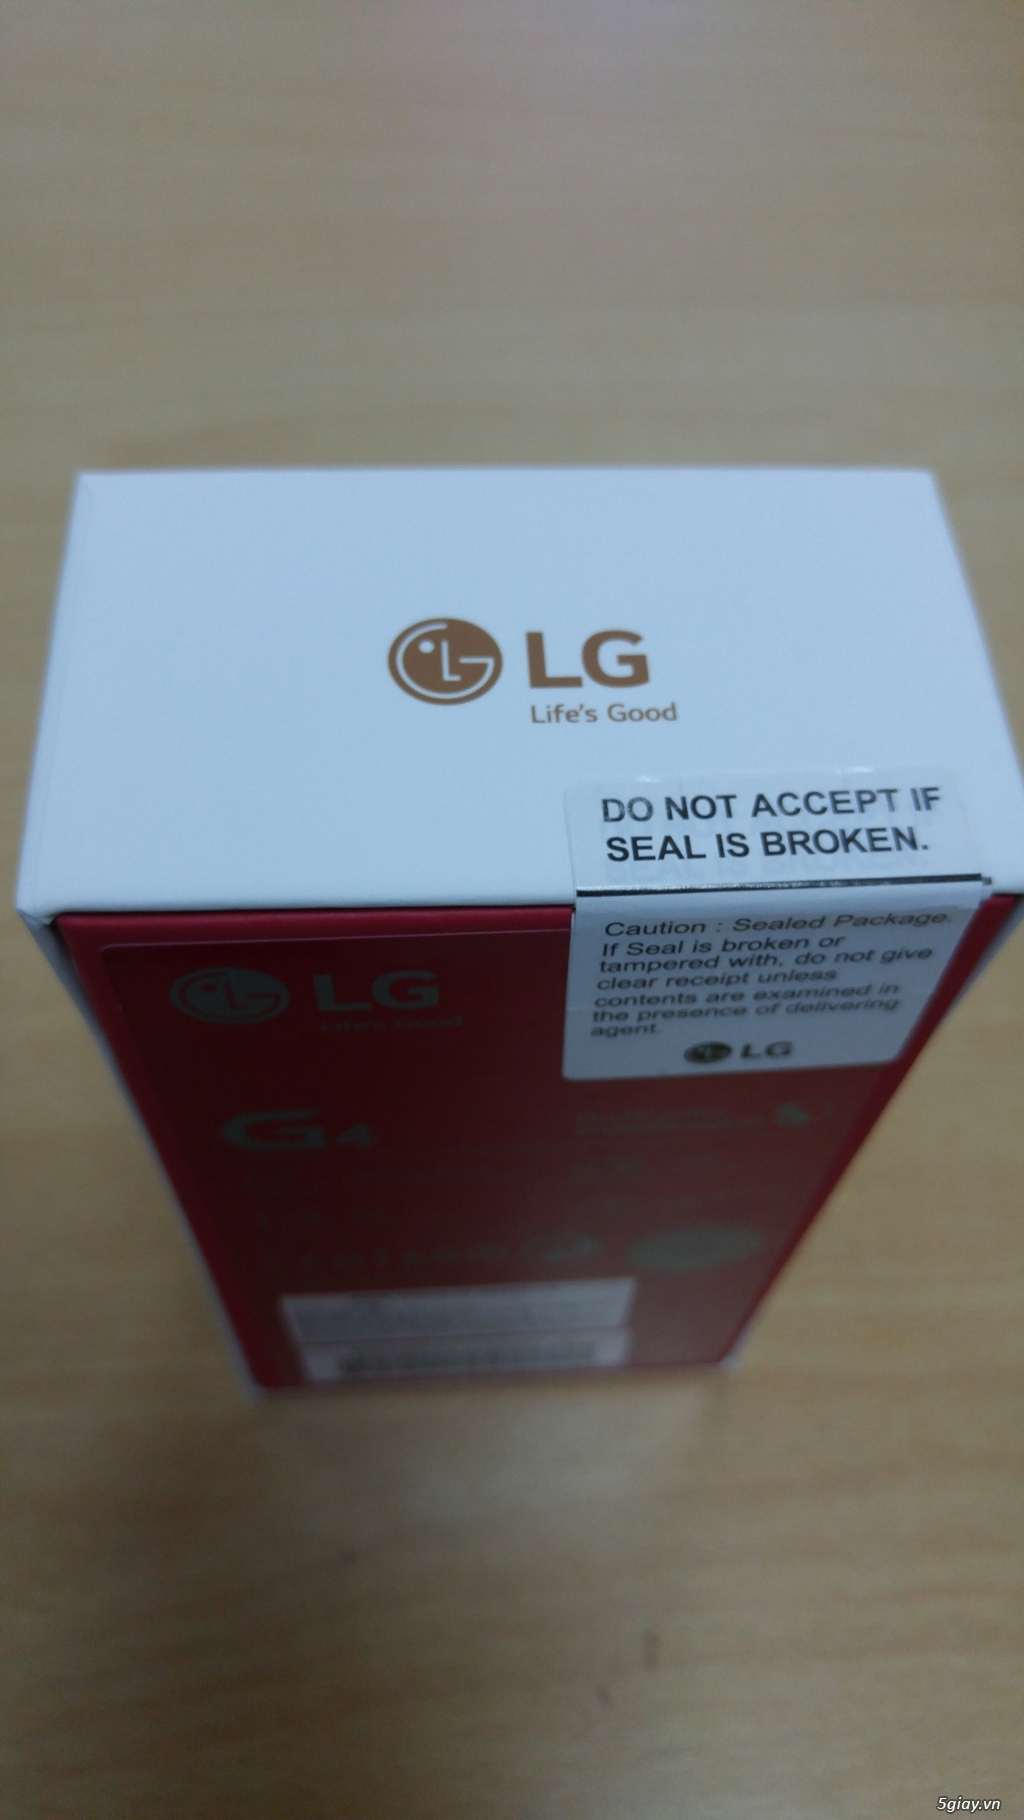 LG G4 - Mẫu mới nhất dành cho những bạn đam mê chụp ảnh - Tặng kèm nhiều quà hấp dẫn - 2